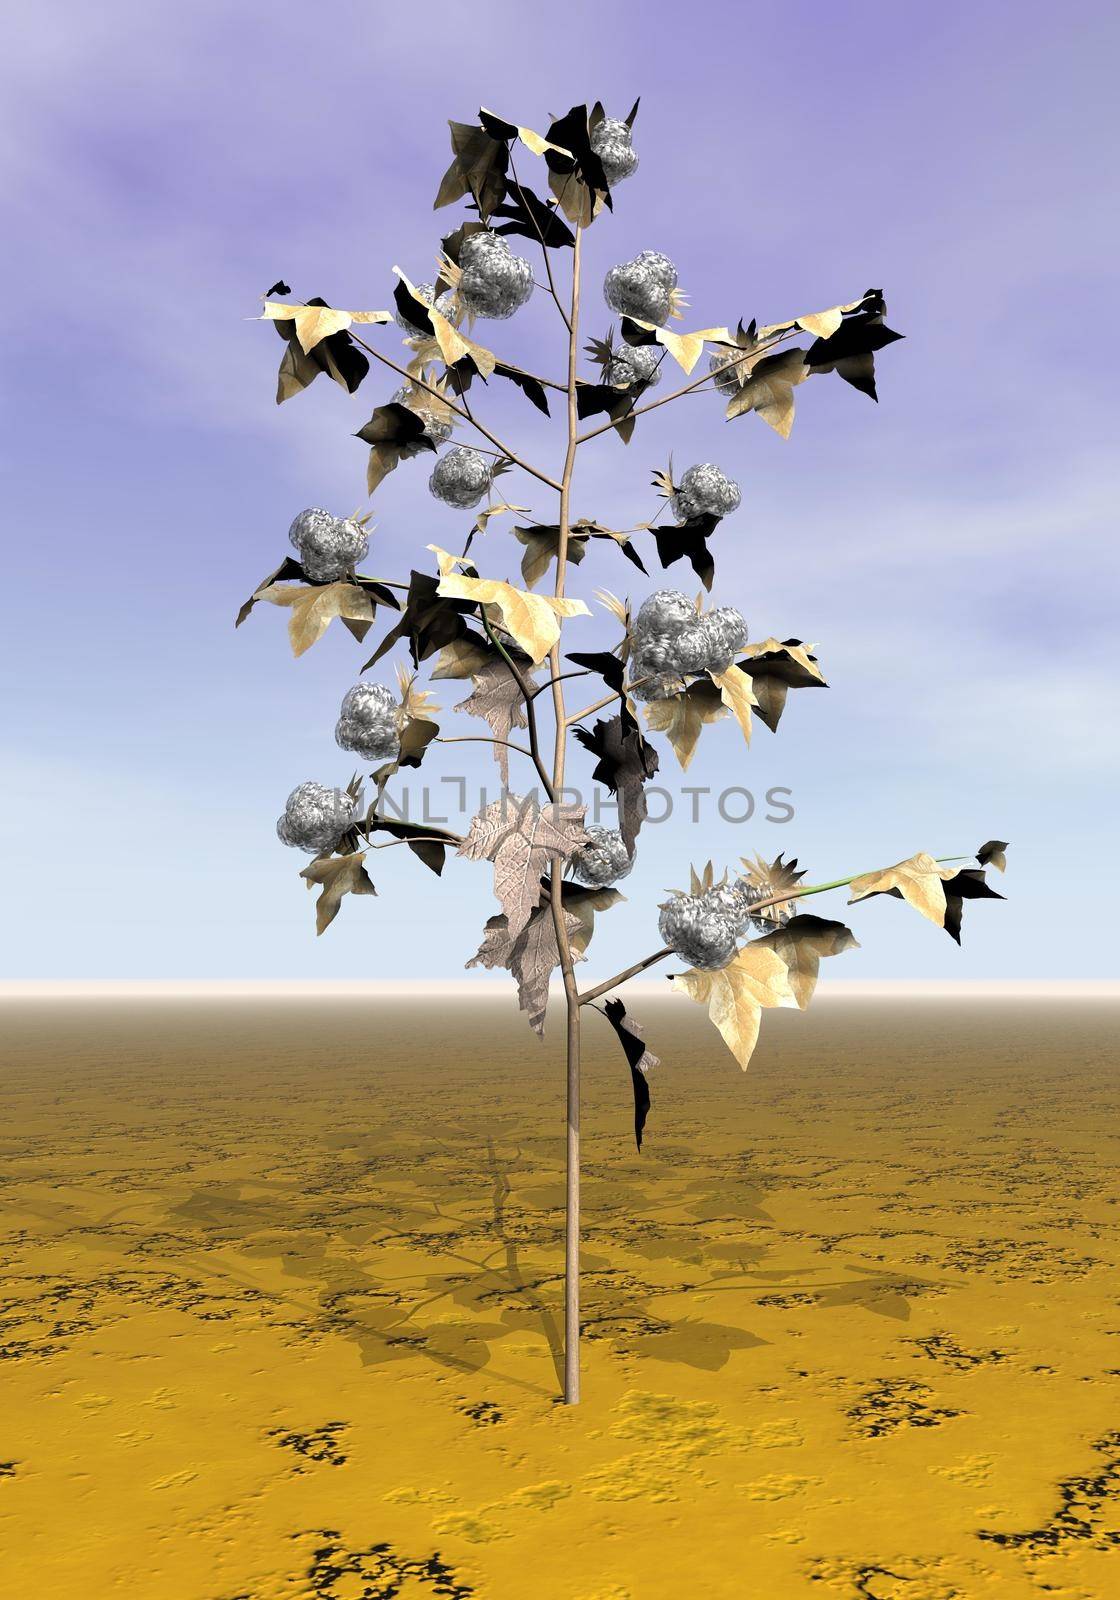 Mature cotton plant - 3D render by Elenaphotos21